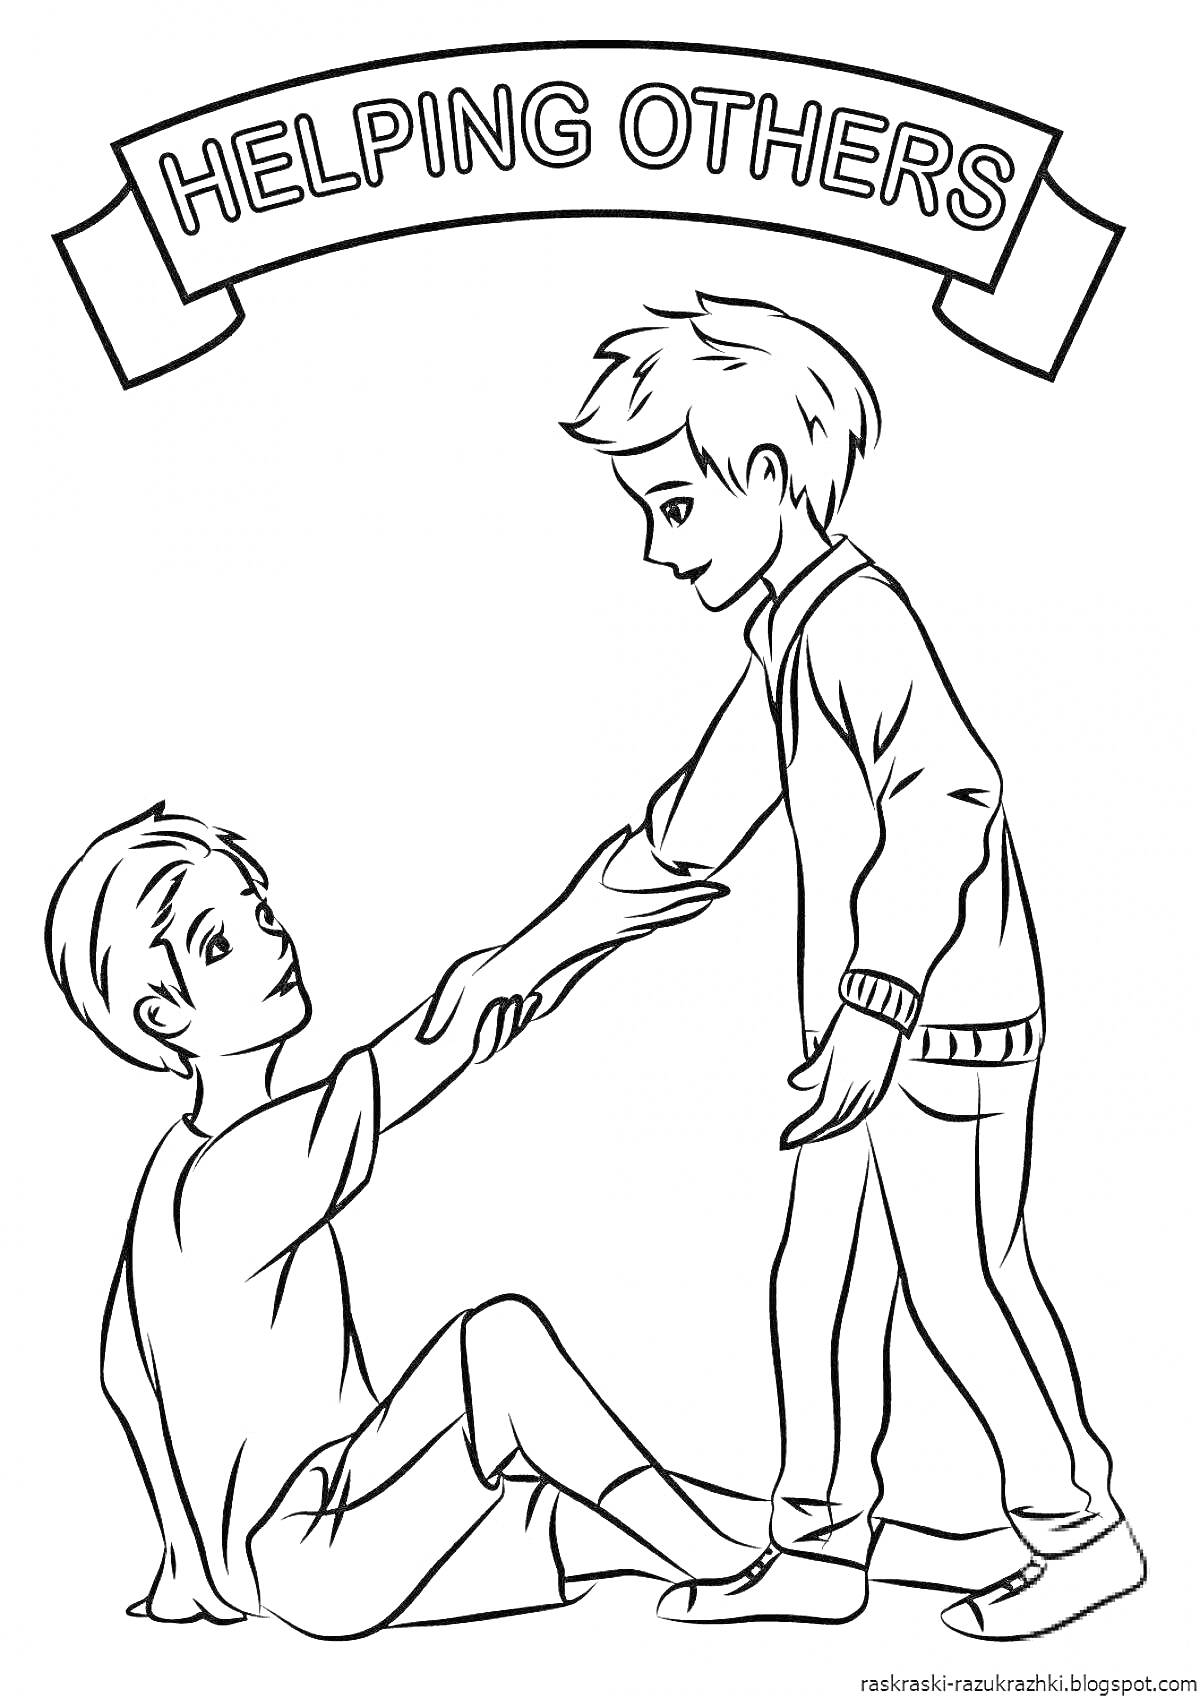 Помощь другим: мальчик помогает другому мальчику подняться